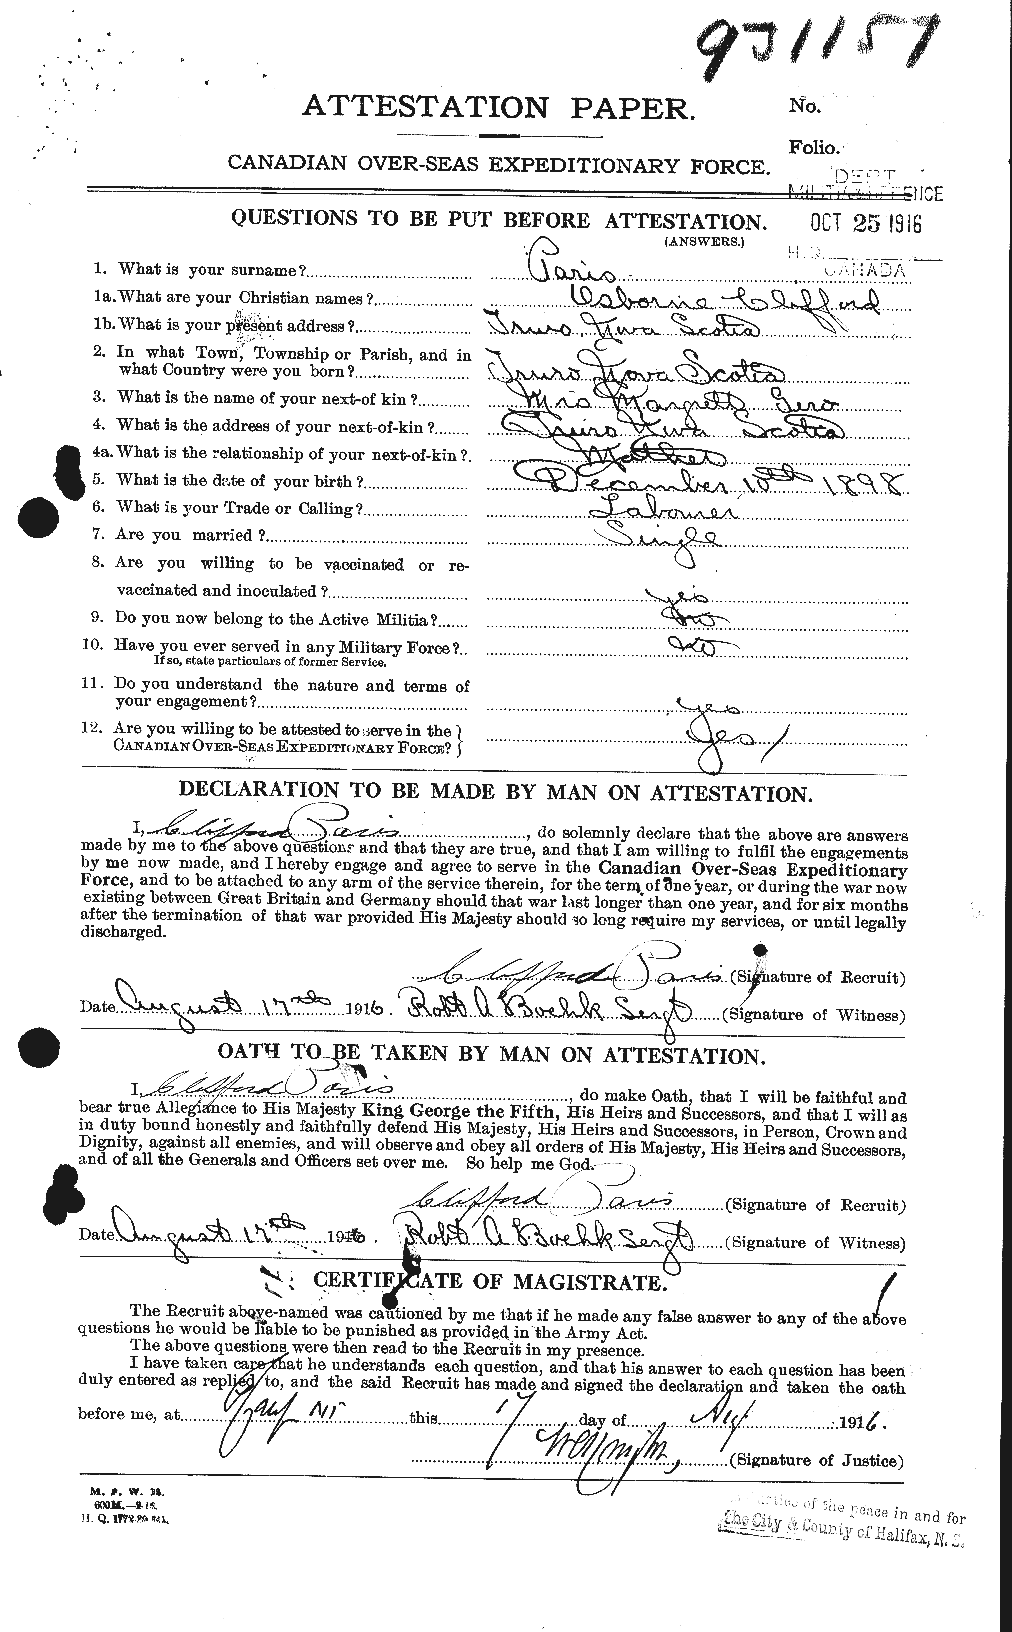 Dossiers du Personnel de la Première Guerre mondiale - CEC 564613a